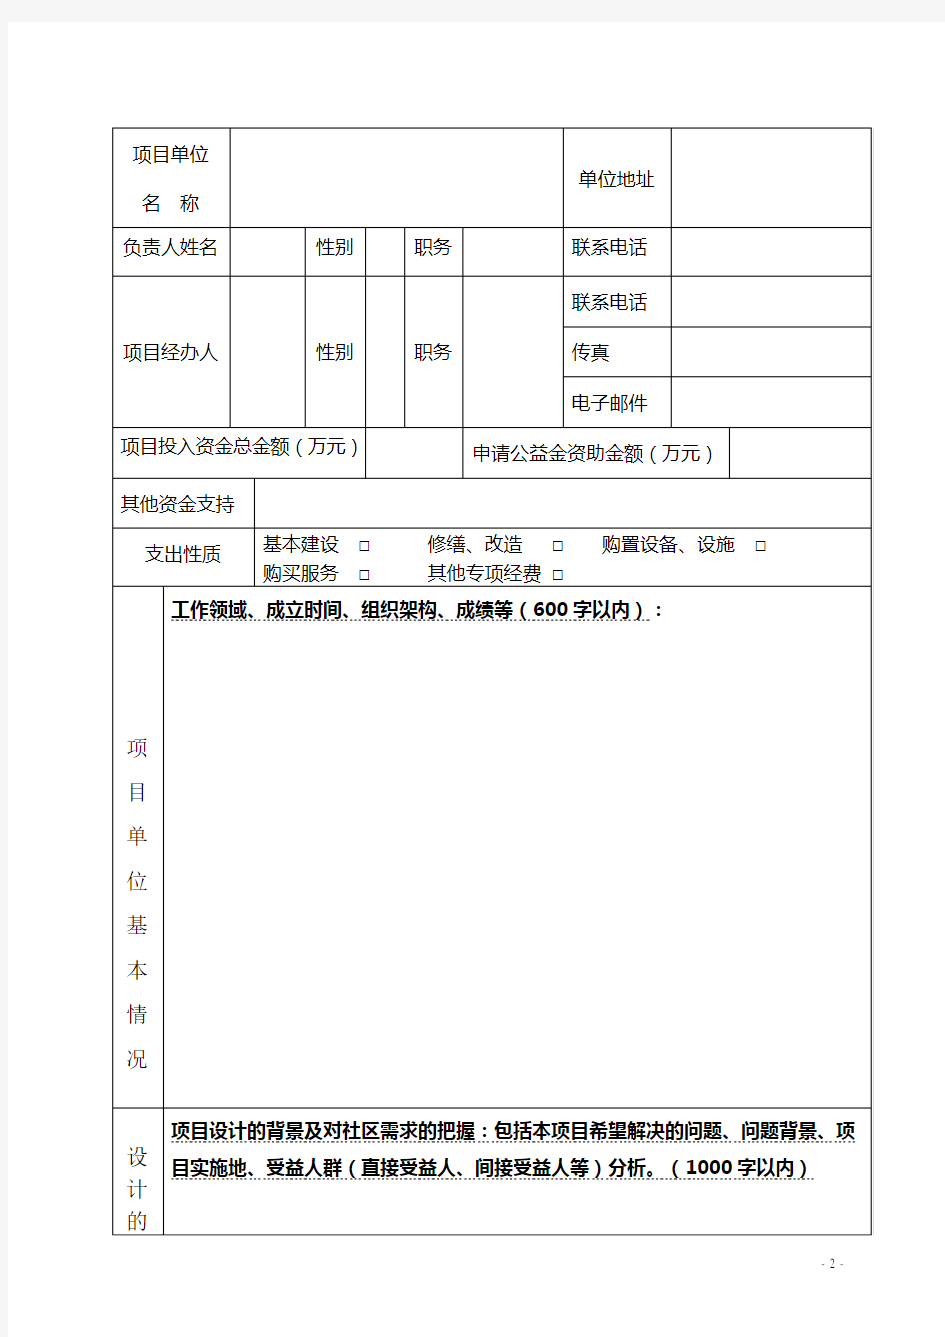 1. 深圳福彩公益金资助公益项目计划申请书 - 附件一： 